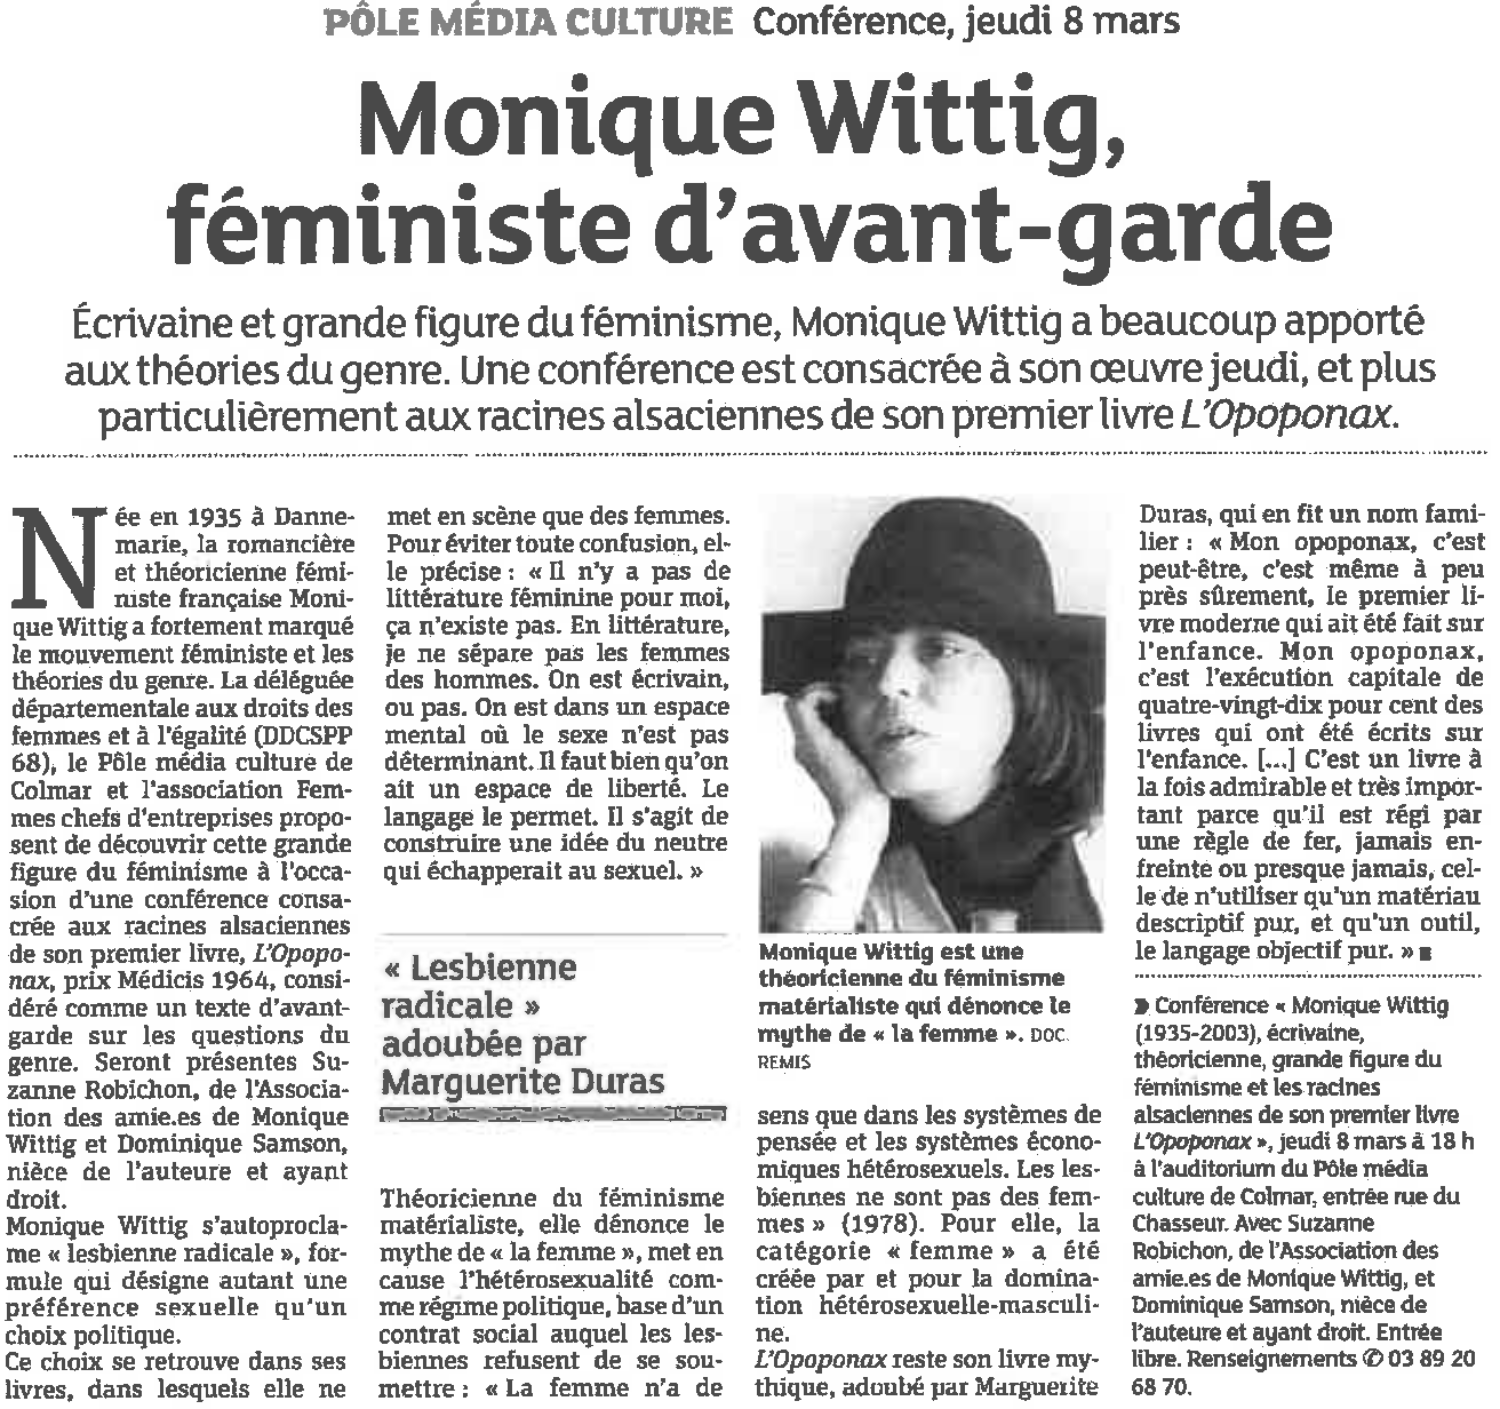 Conférence sur Monique Wittig à Colmar en Alsace